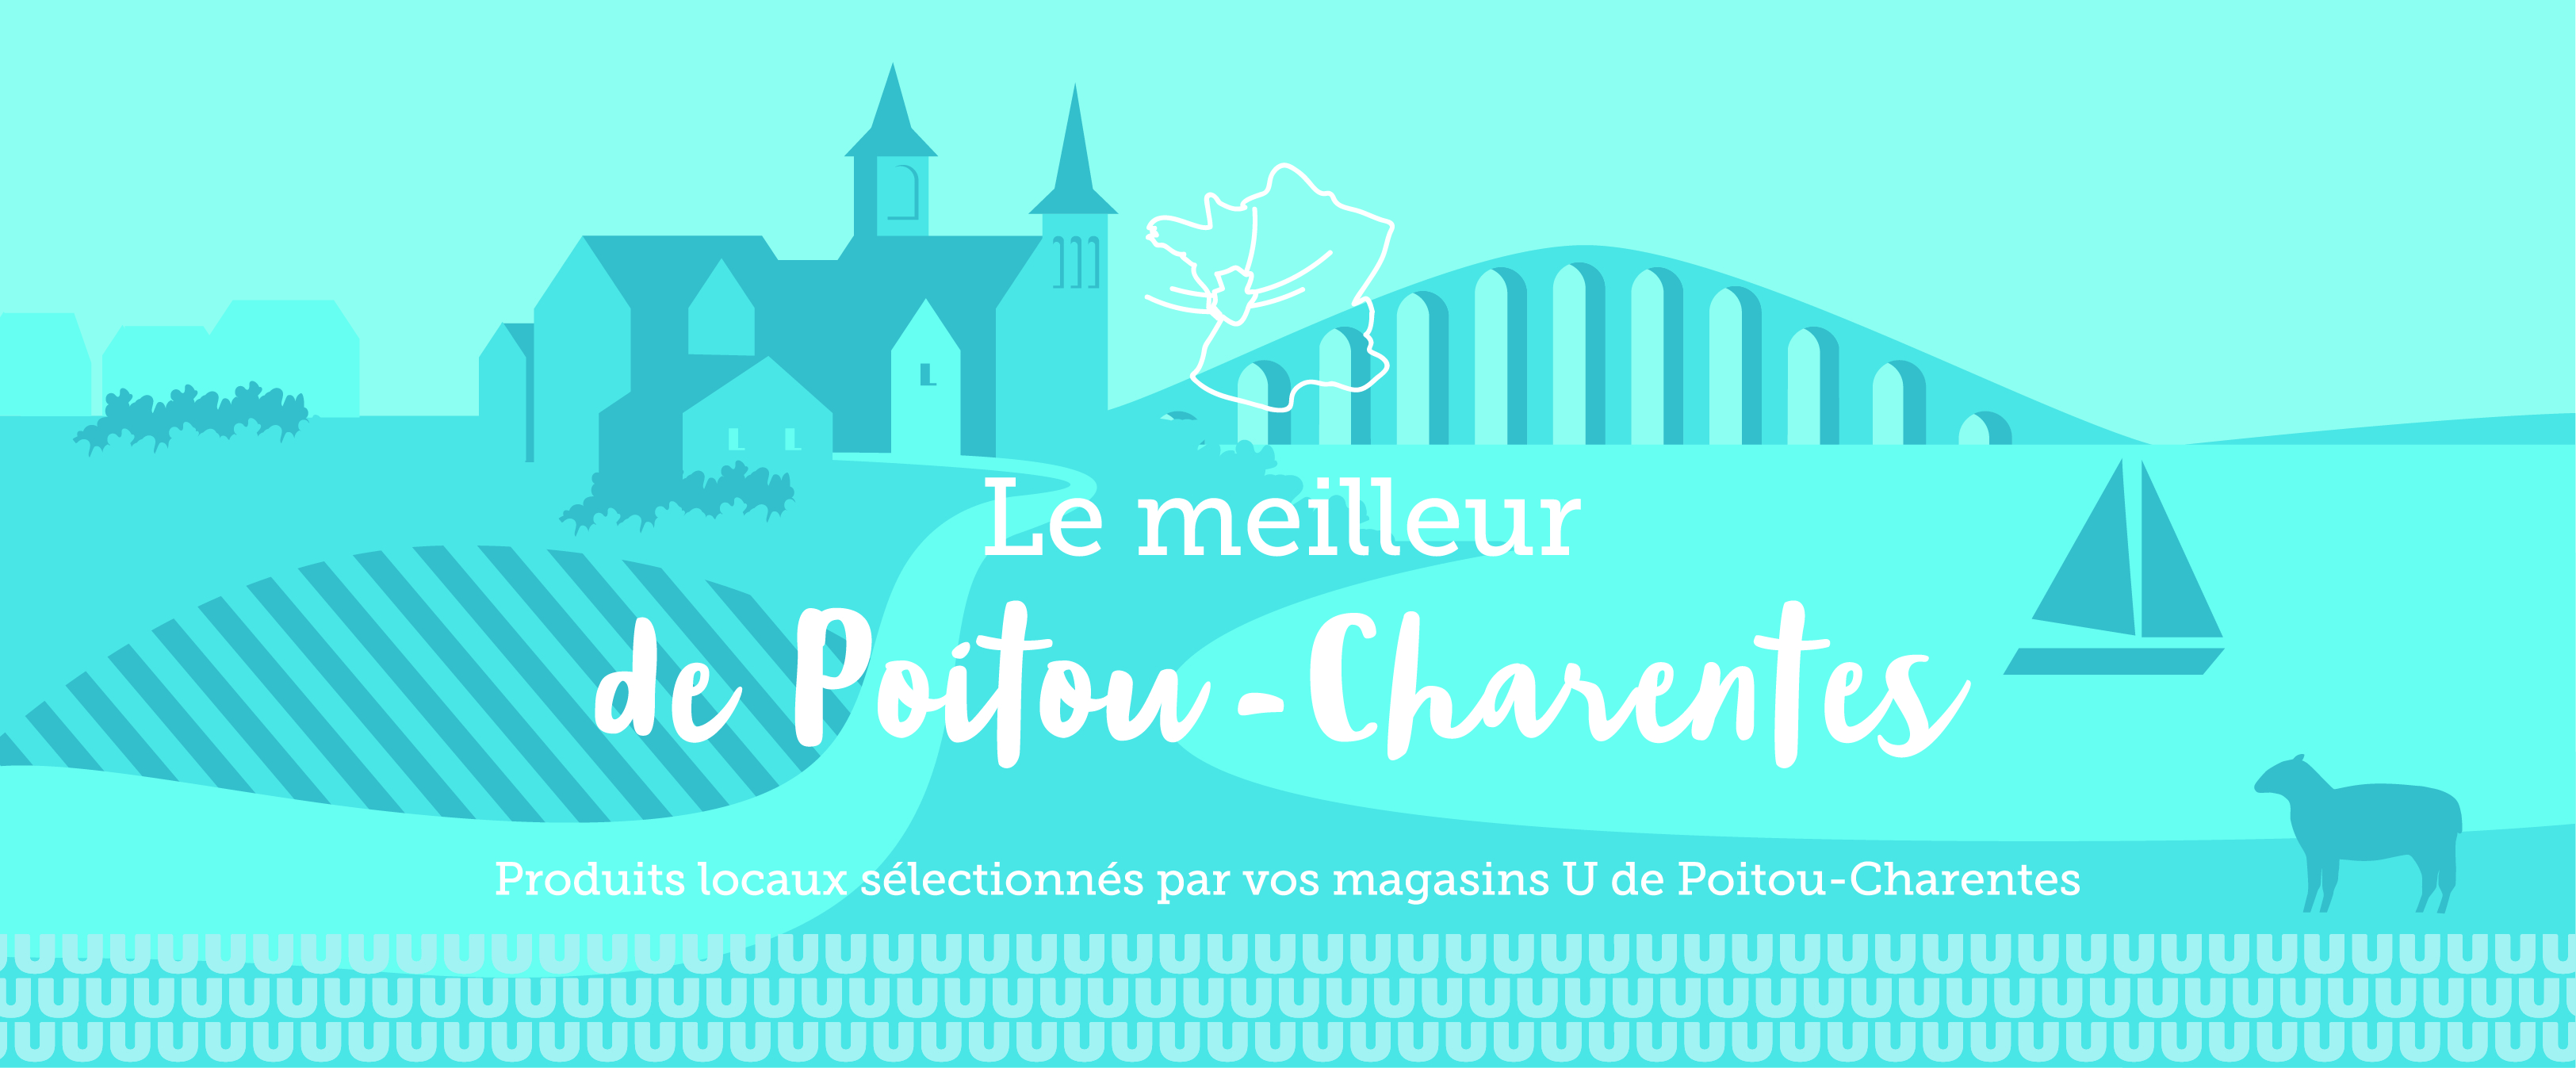 Le meilleur de Poitou-Charentes